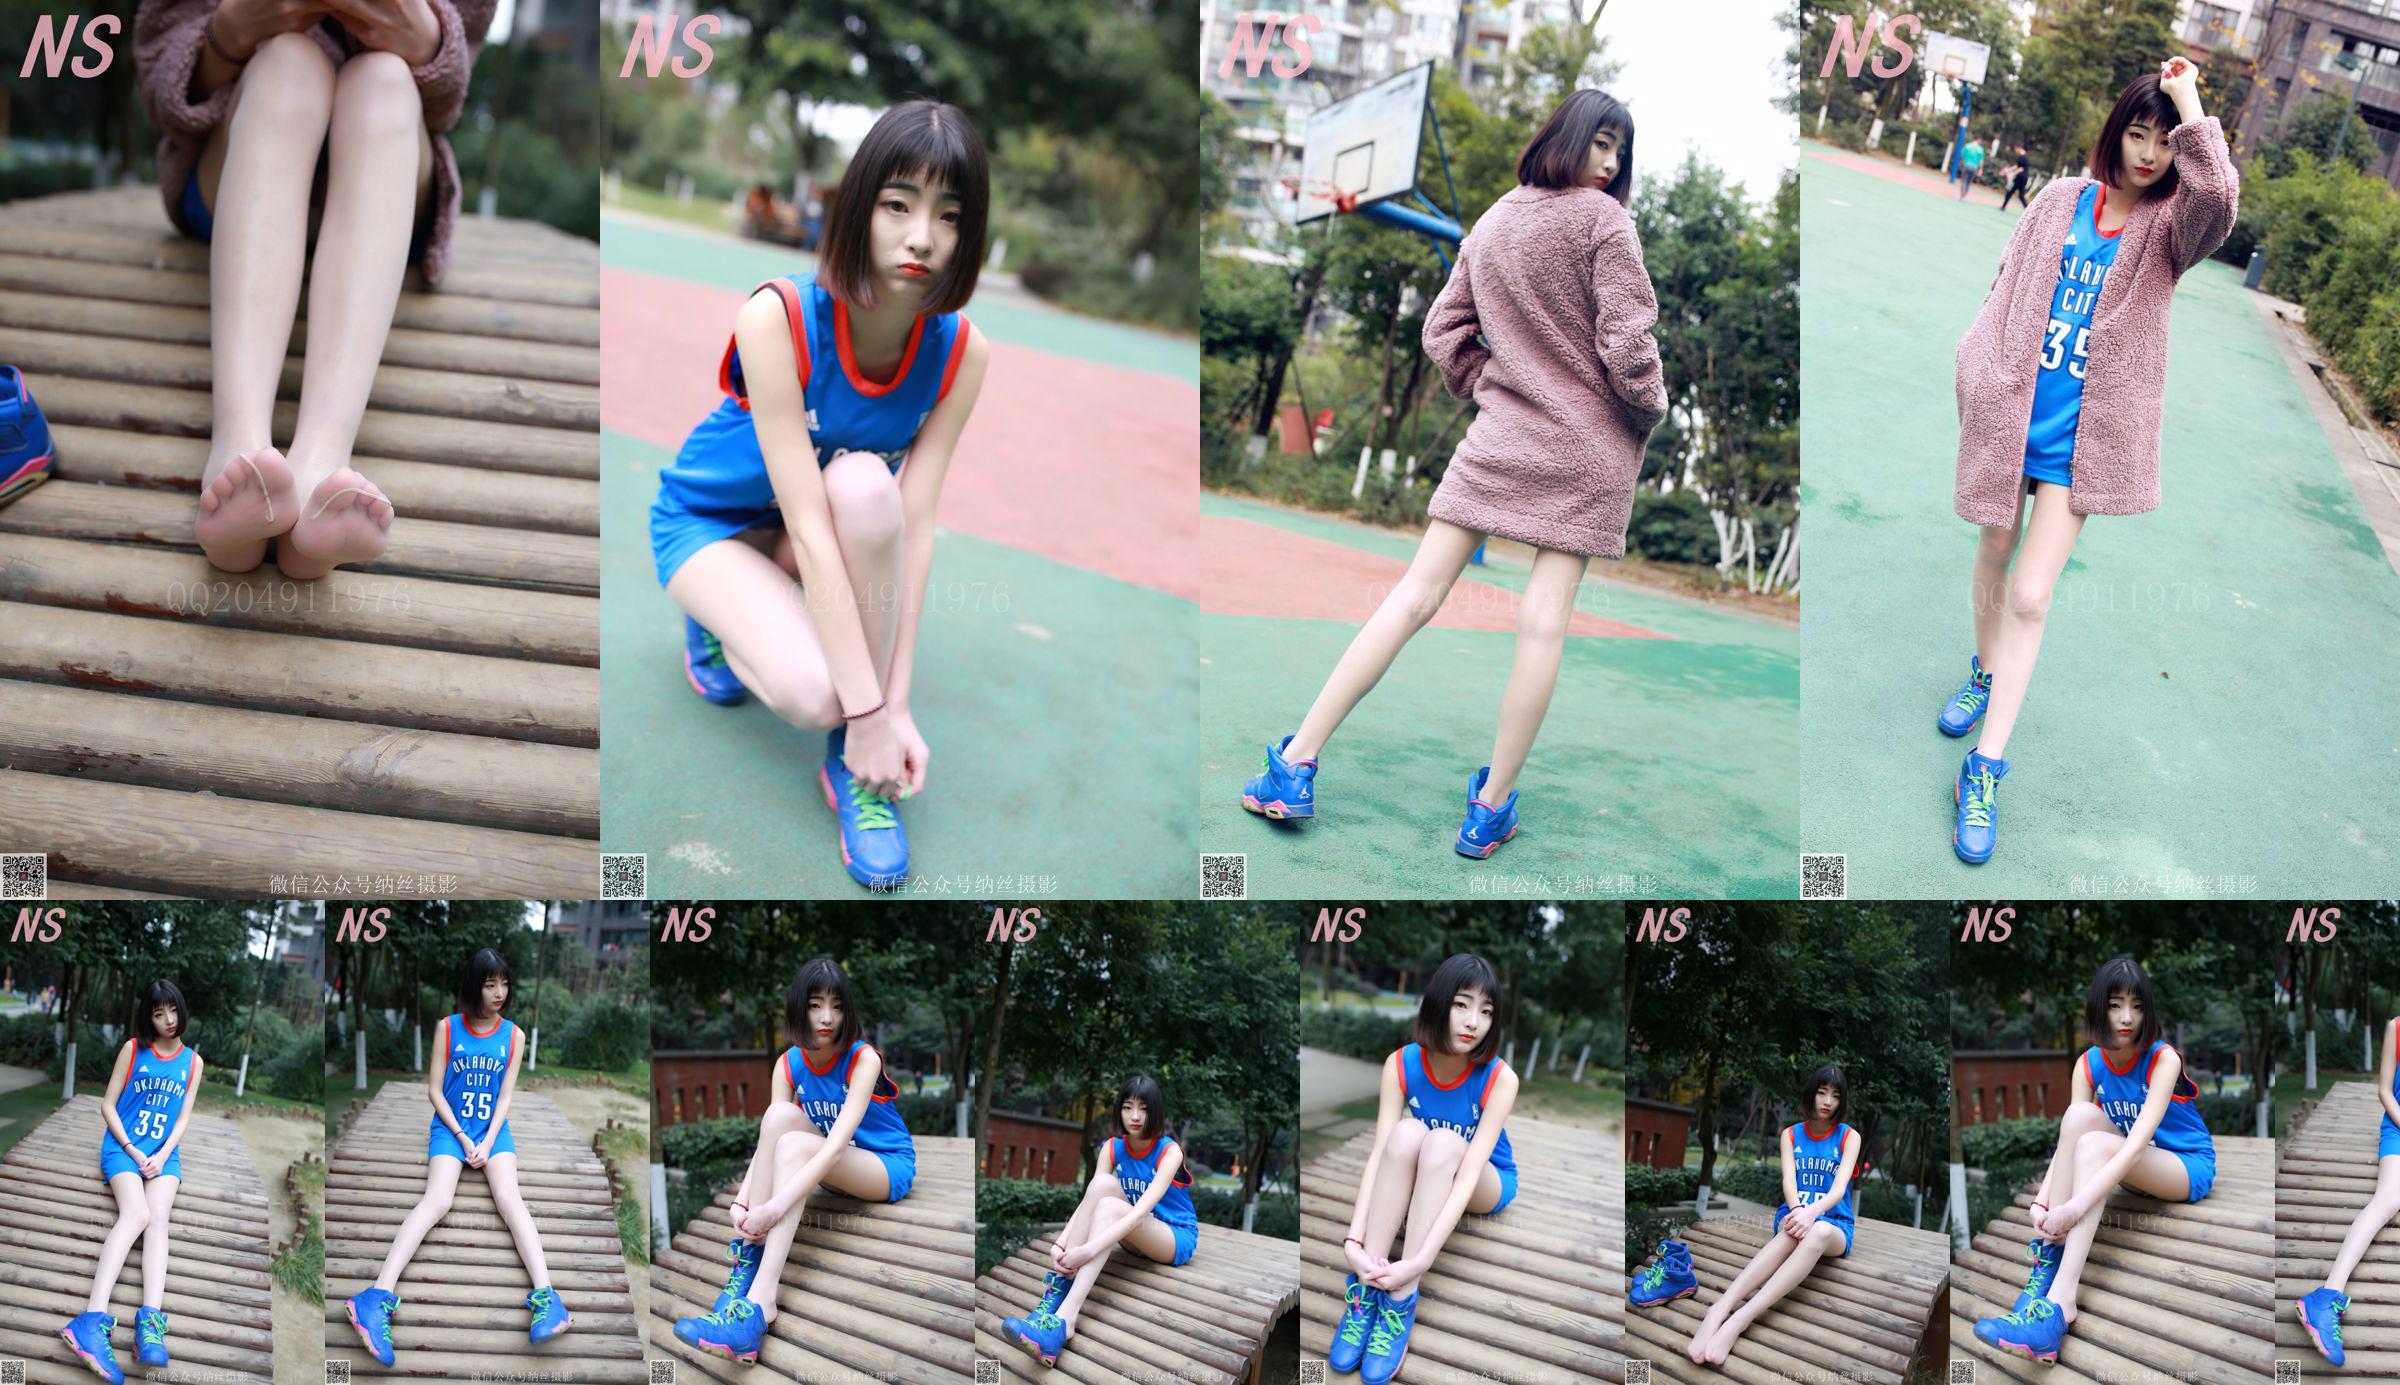 Chen Yujie "Basketball Girl" [Nasi Photography] SỐ 107 No.e7ed85 Trang 39